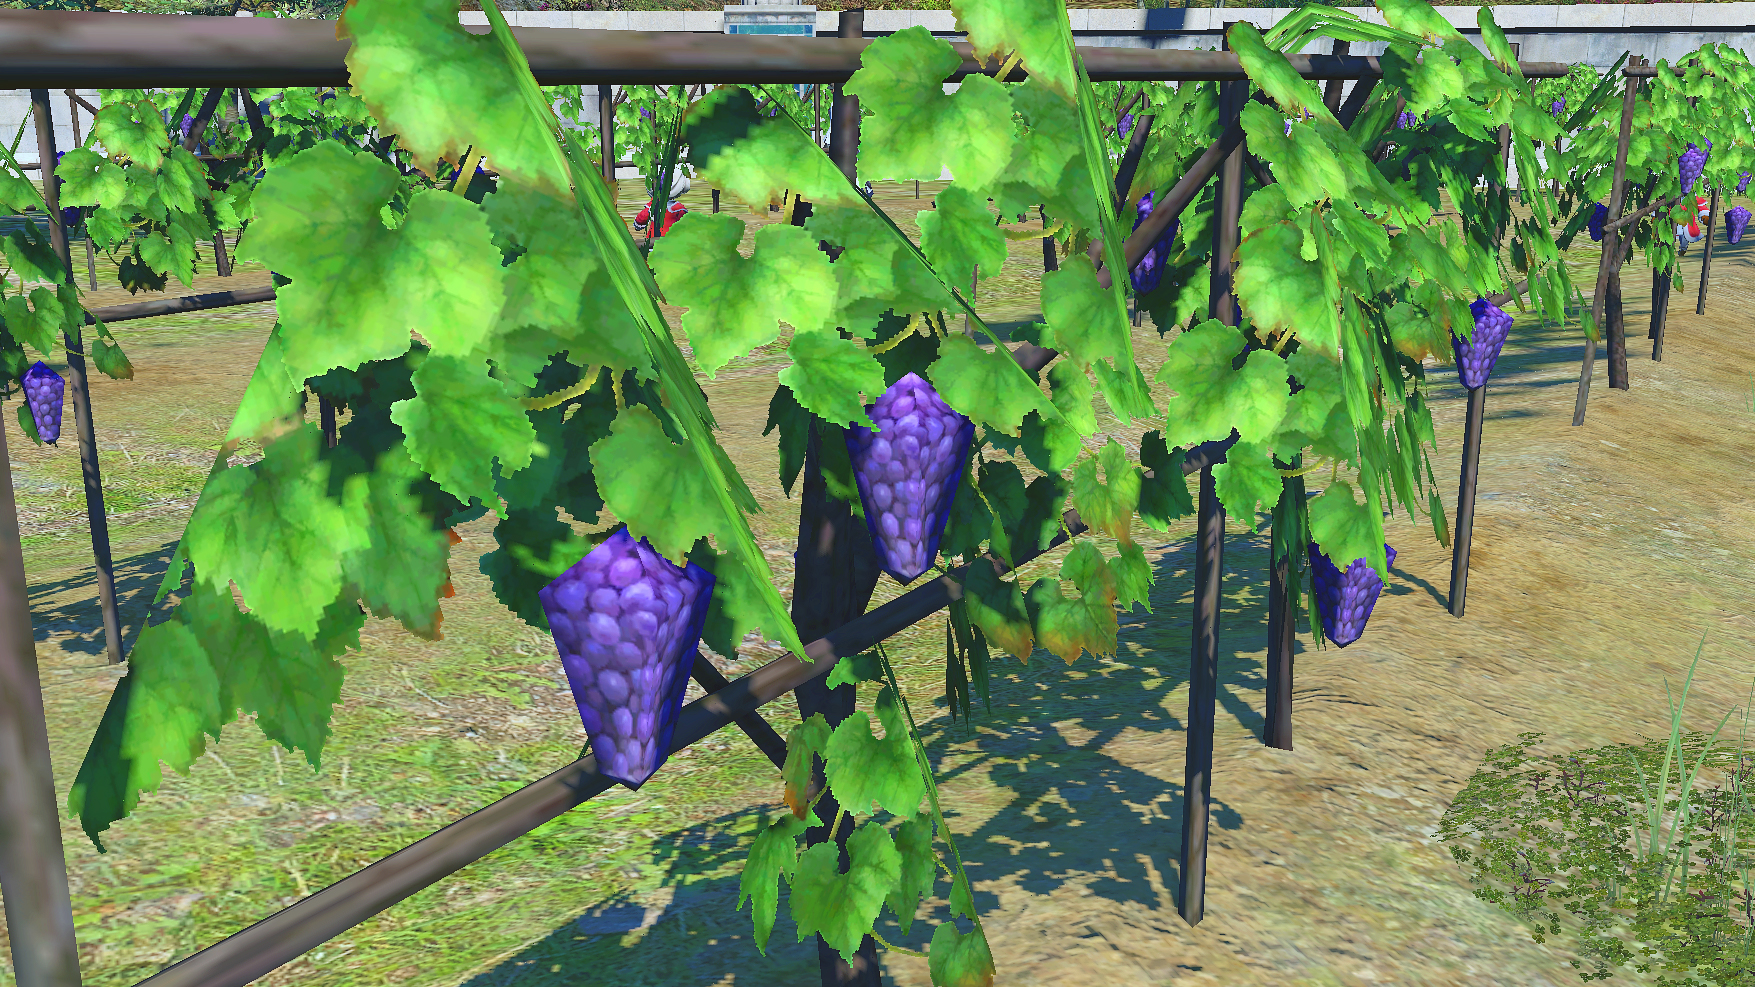  Leave Final Fantasy 14: Endwalker's grapes alone 